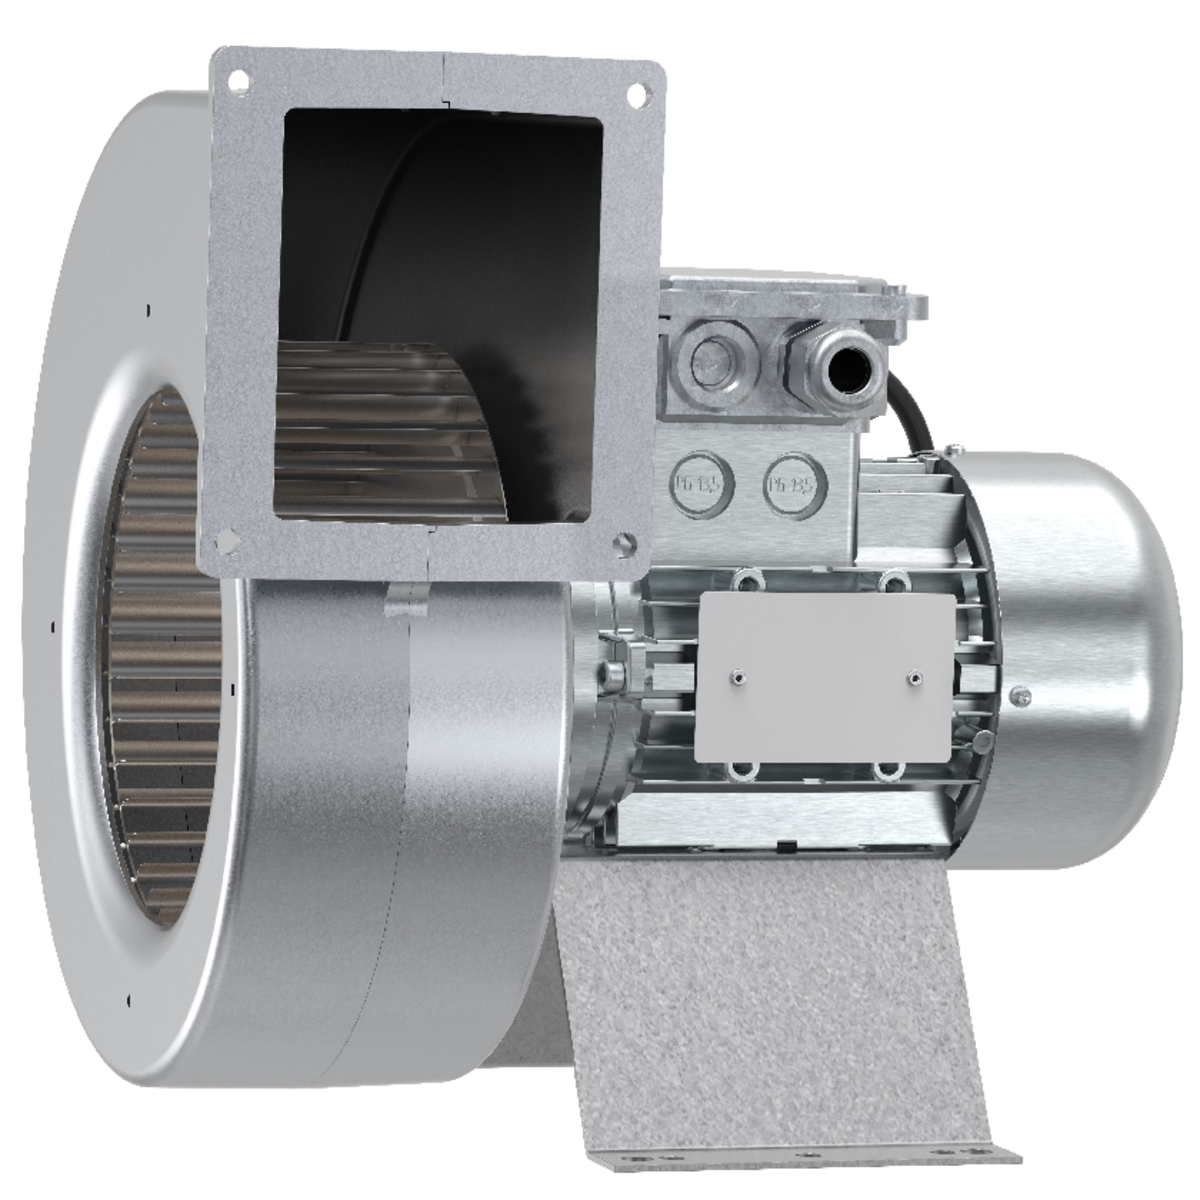 EX - Ventilateurs centrifuges - Ventilateurs (Ventilation et Traitement d’air) - Produits Ventilation & Traitement d’air - Systemair